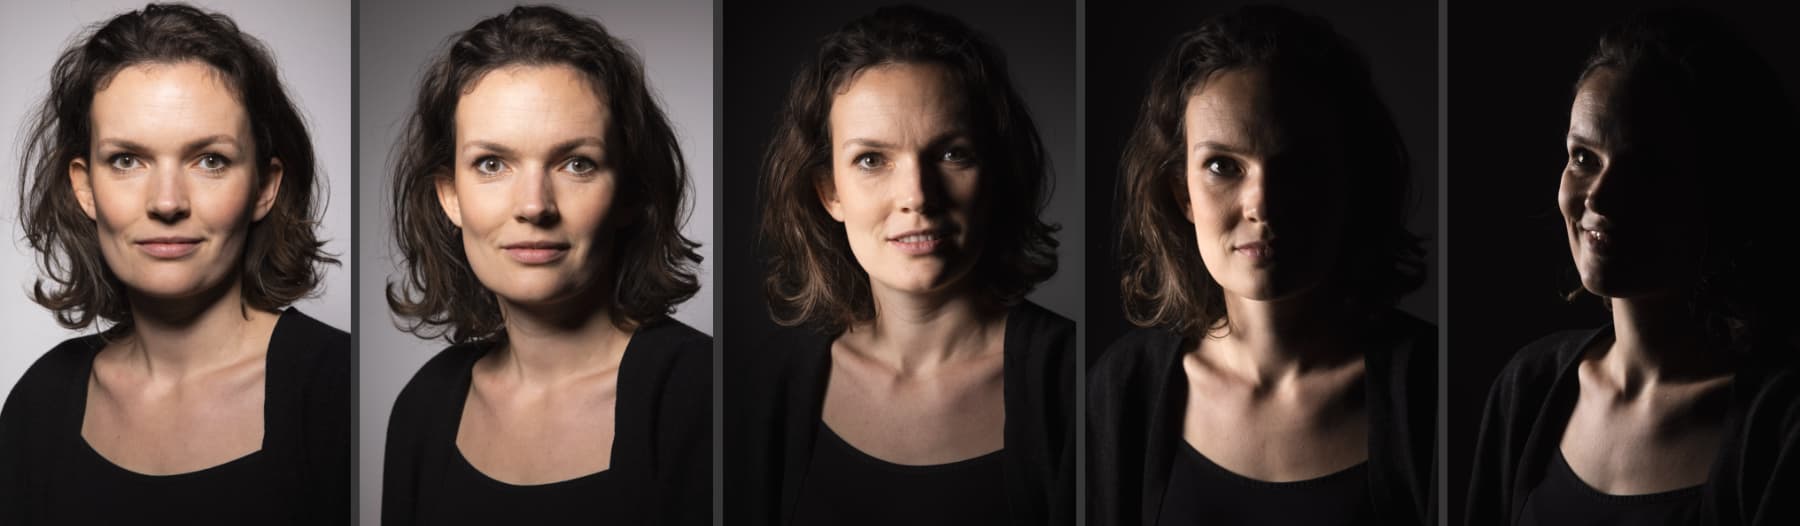 5 Licht-Setups für Portraitfotografie, die wir im Kurs gezielt anwenden und umsetzen